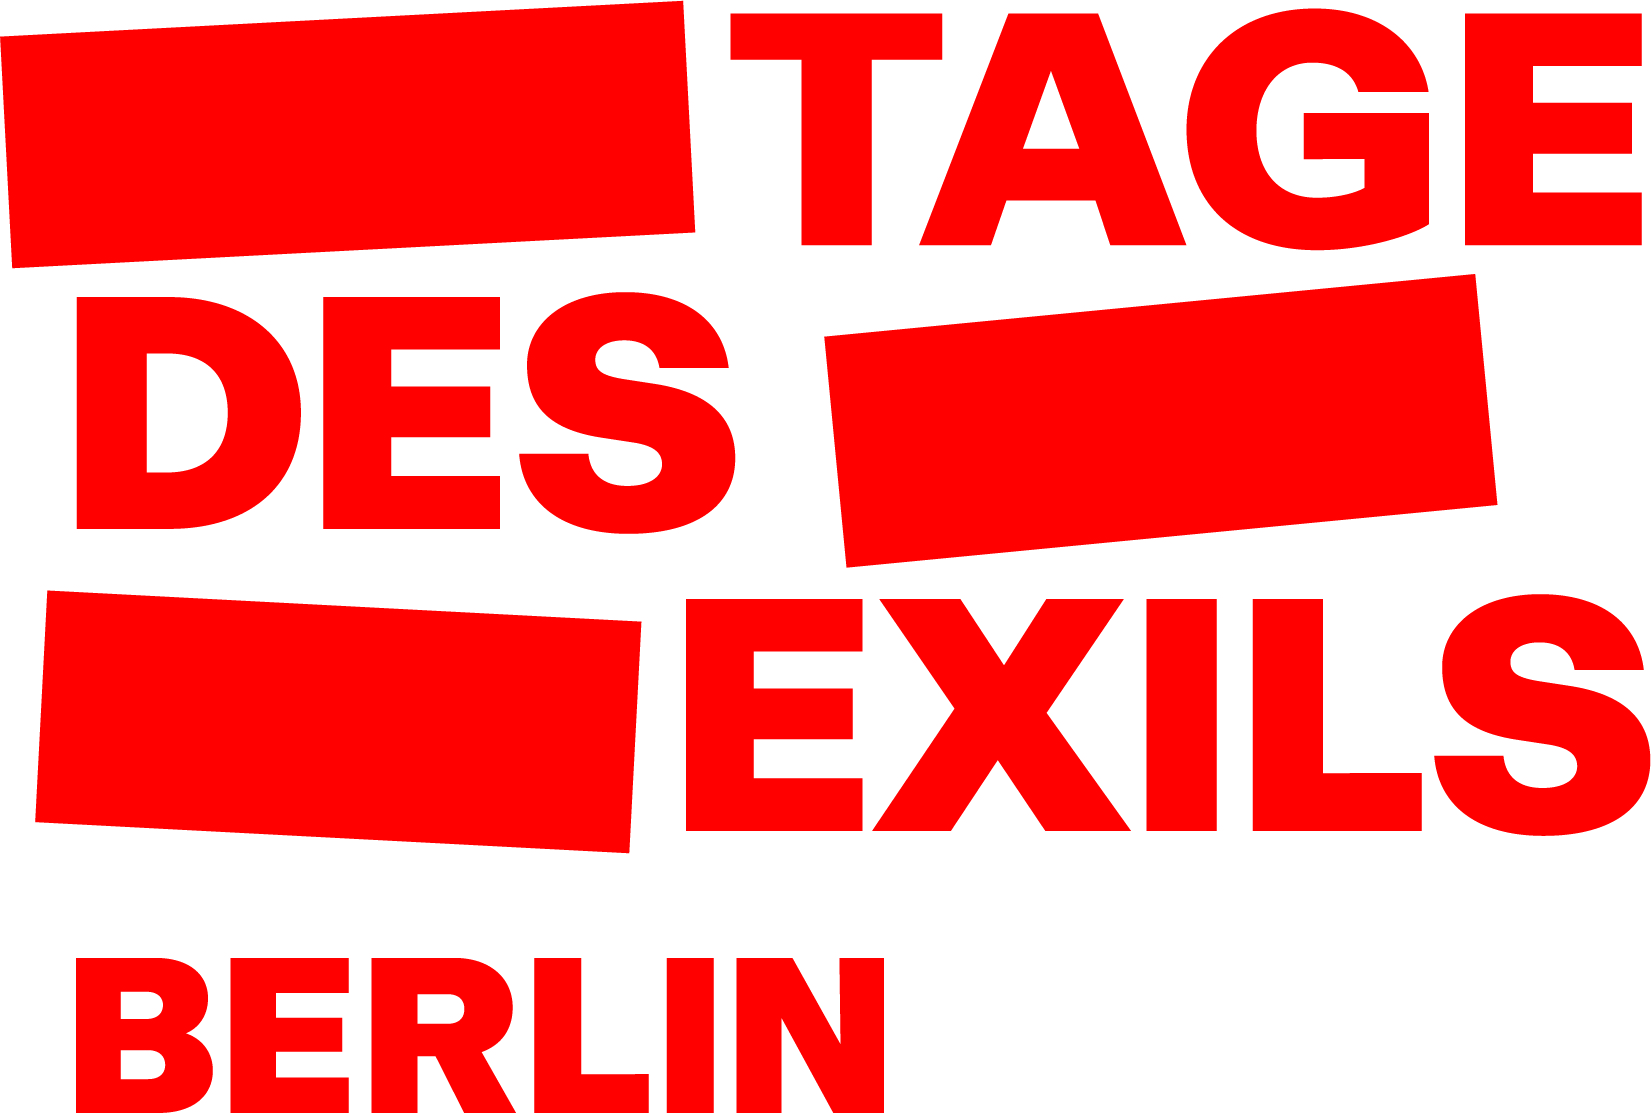 Das Logo "Tage des Exils Berlin" ist rot-weiß gestaltet. 